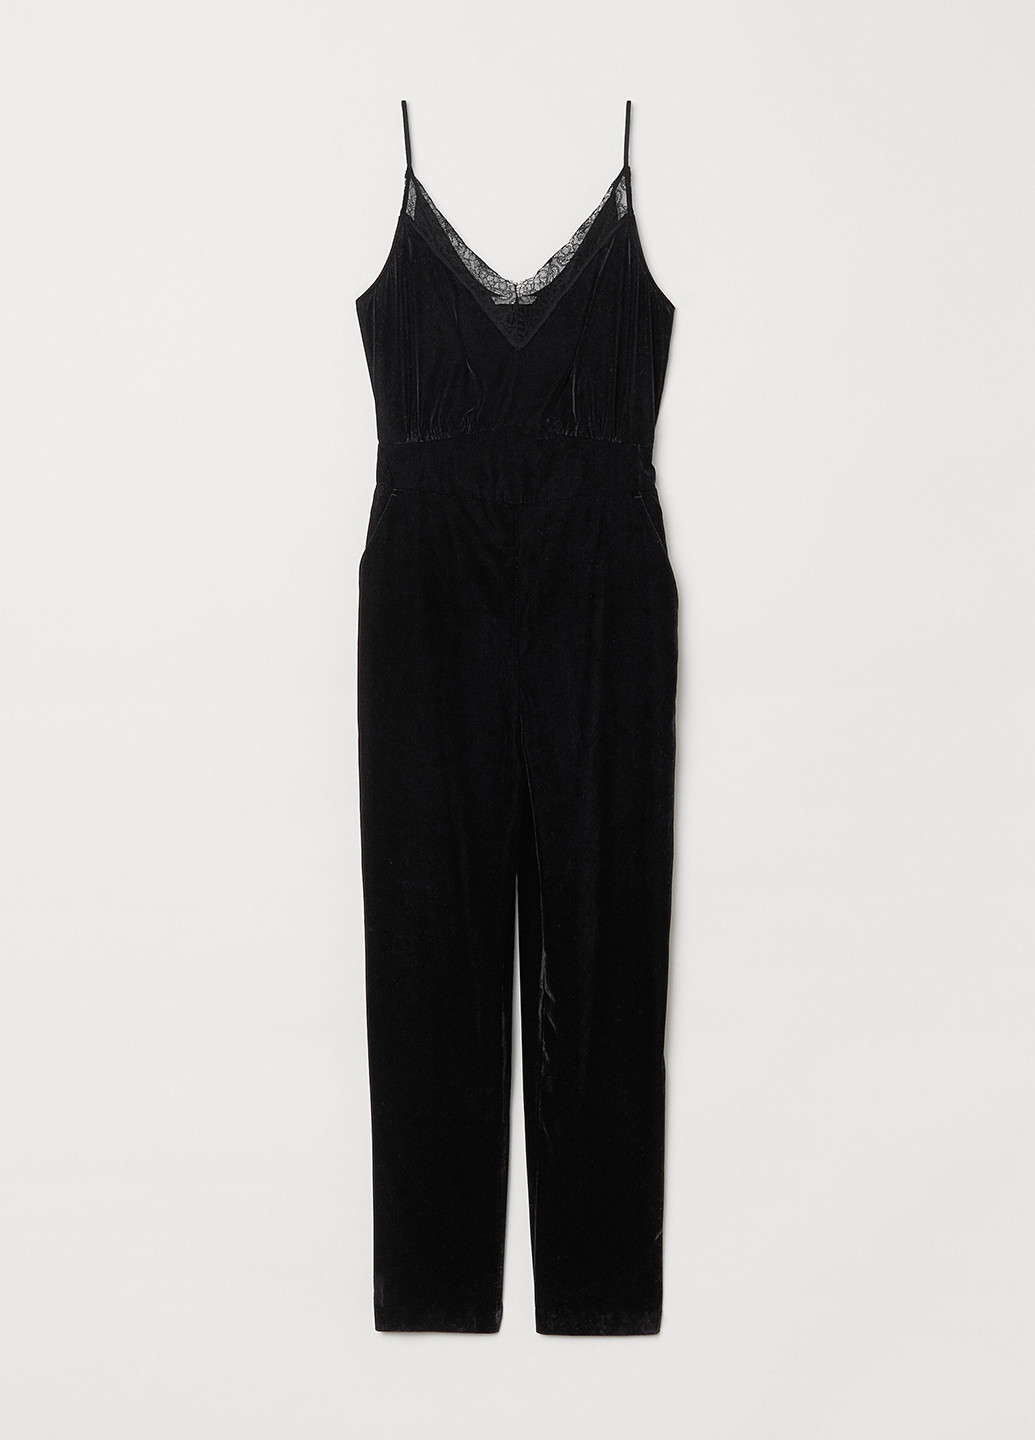 Комбинезон H&M комбинезон-брюки однотонный чёрный вечерний велюр, полиэстер